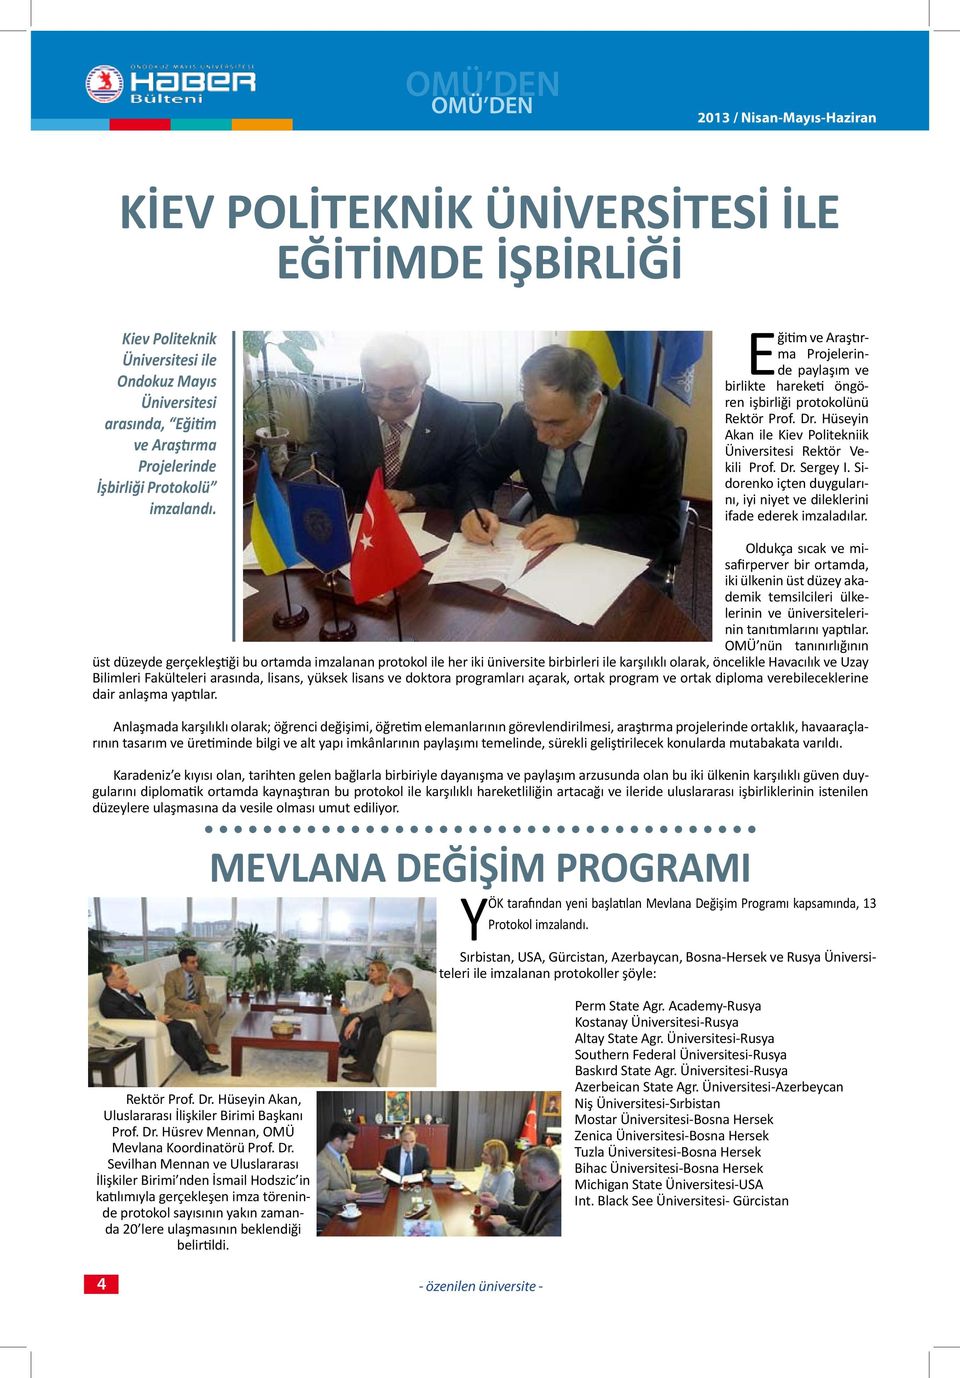 Hüseyin Akan ile Kiev Politekniik Üniversitesi Rektör Vekili Prof. Dr. Sergey I. Sidorenko içten duygularını, iyi niyet ve dileklerini ifade ederek imzaladılar.